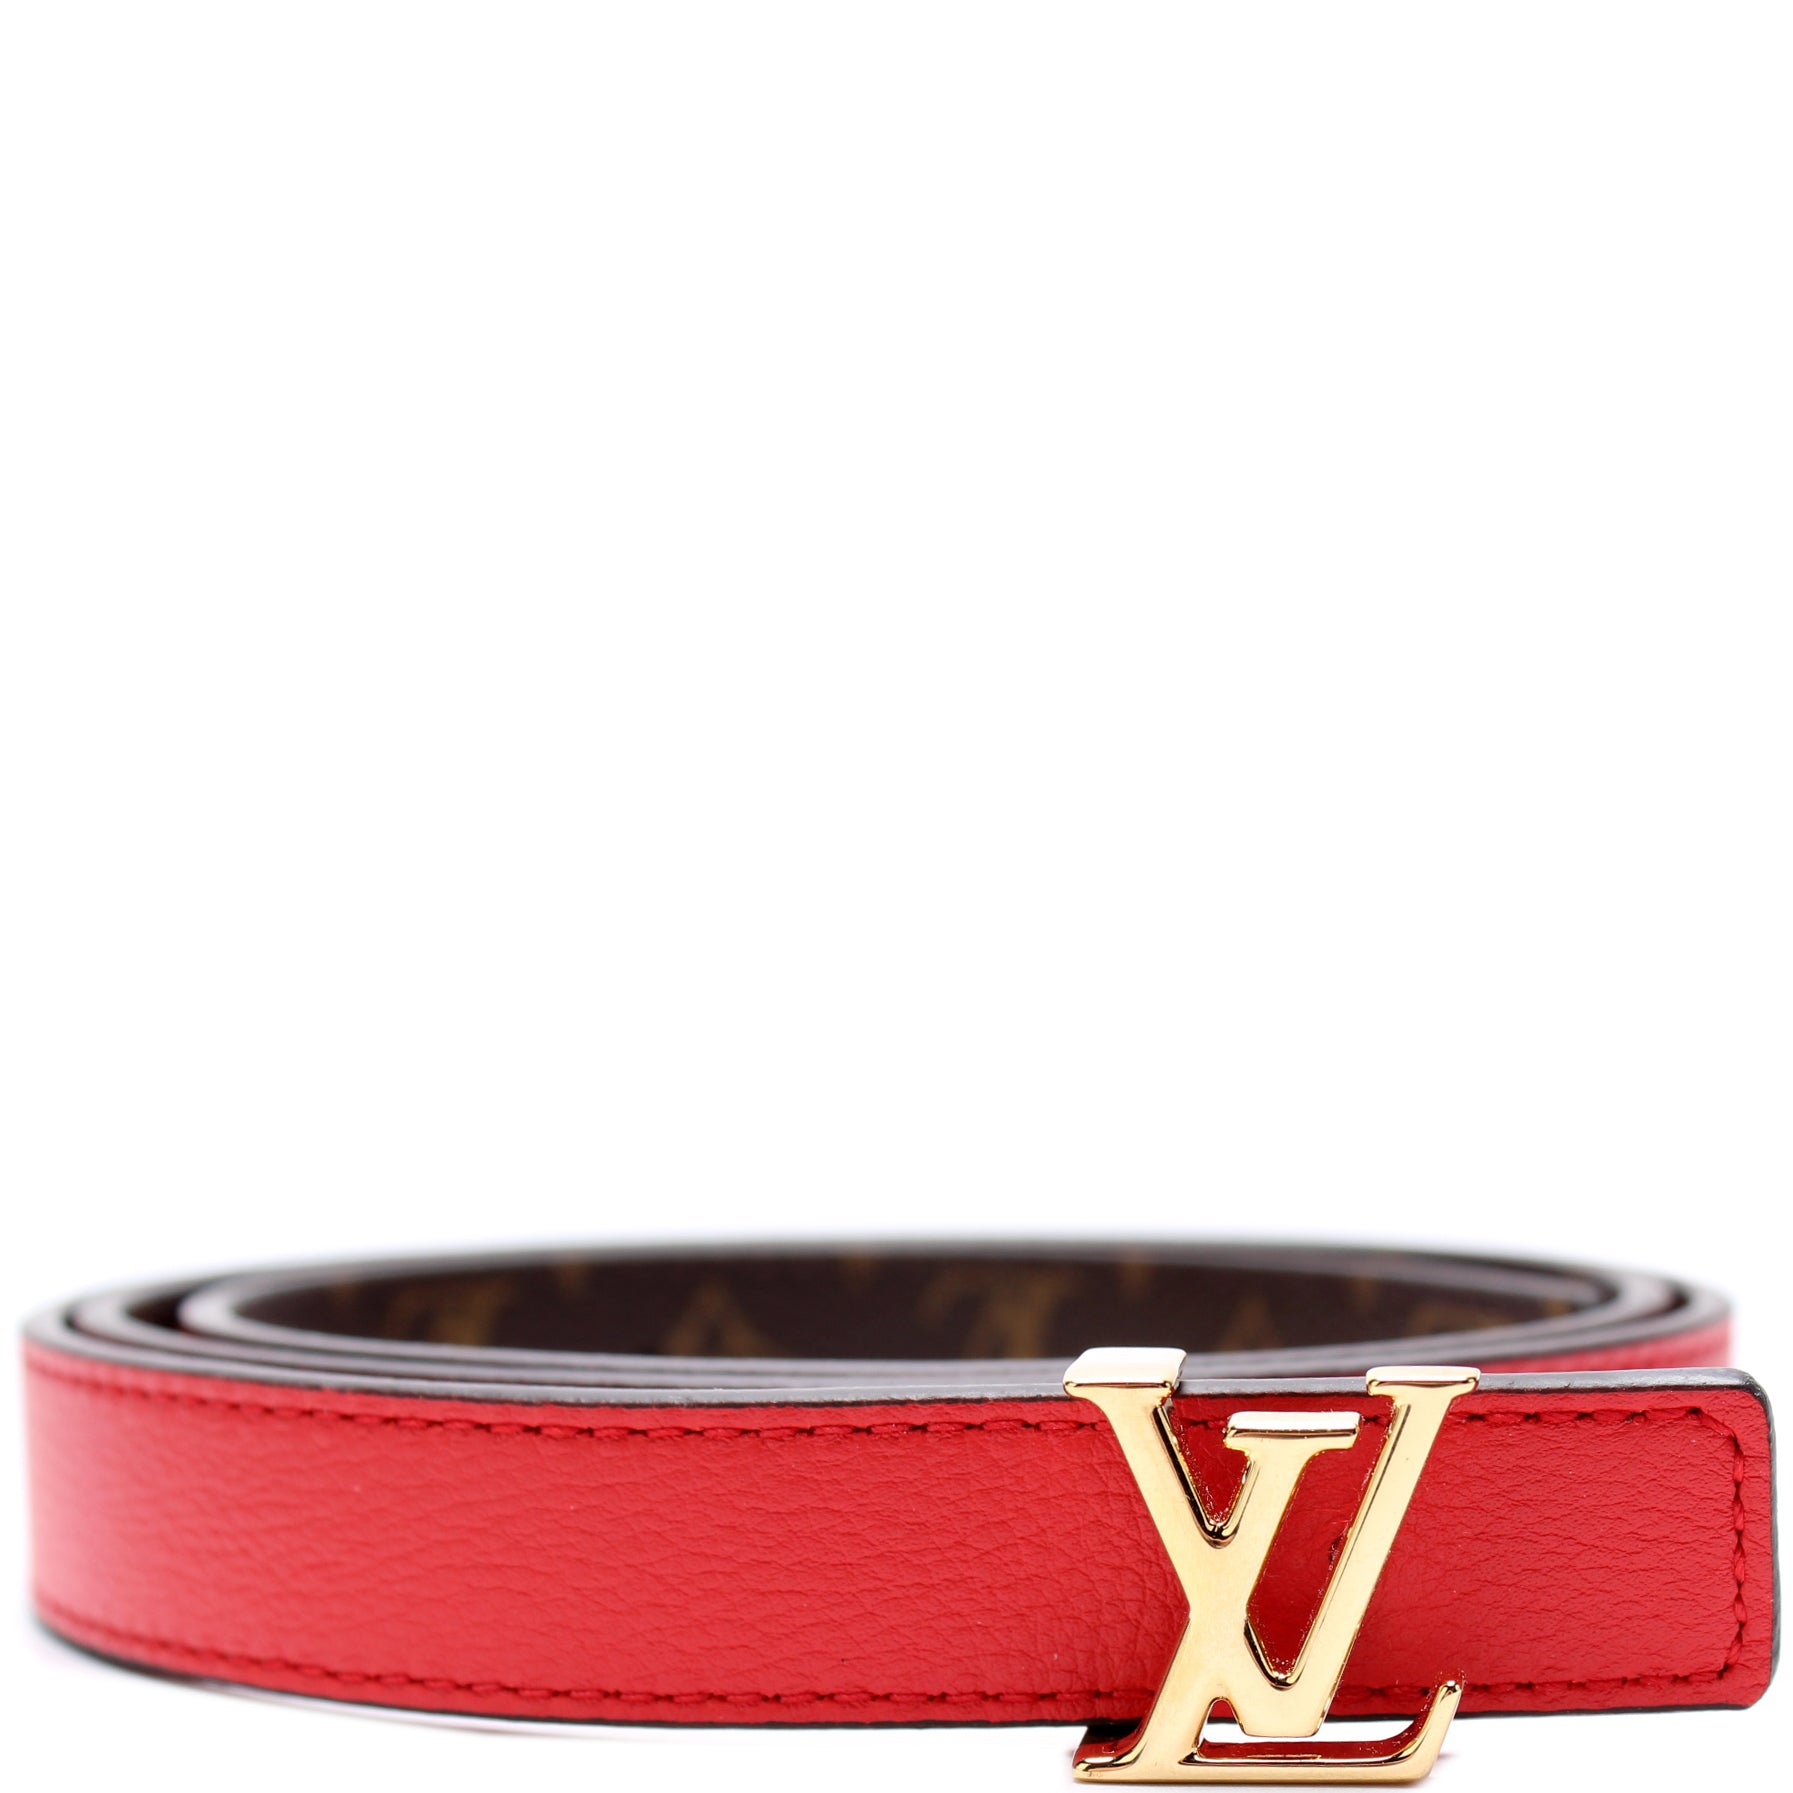 Louis Vuitton LV Iconic Leather Bracelet